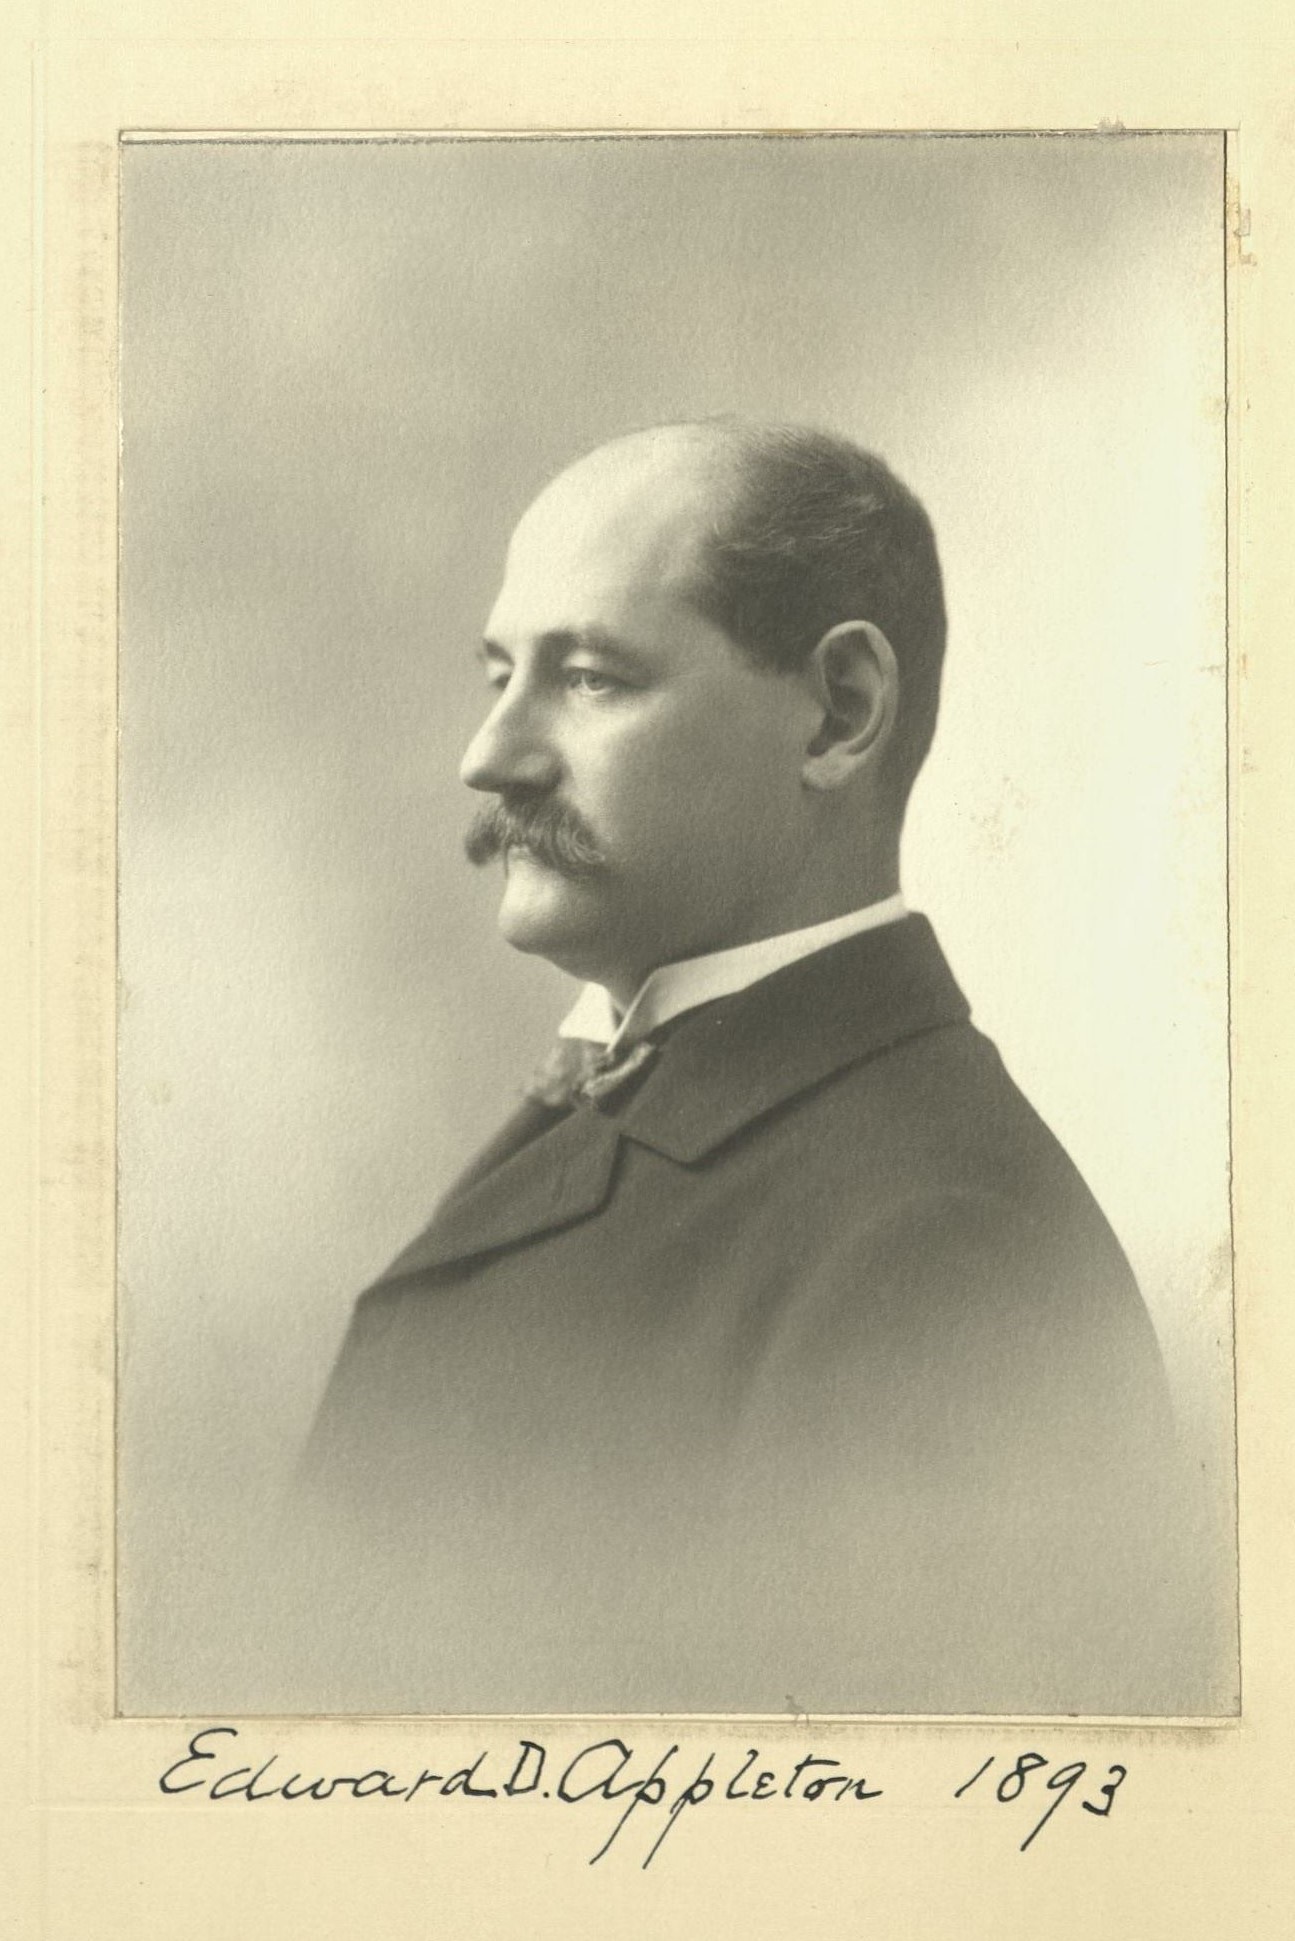 Member portrait of Edward D. Appleton